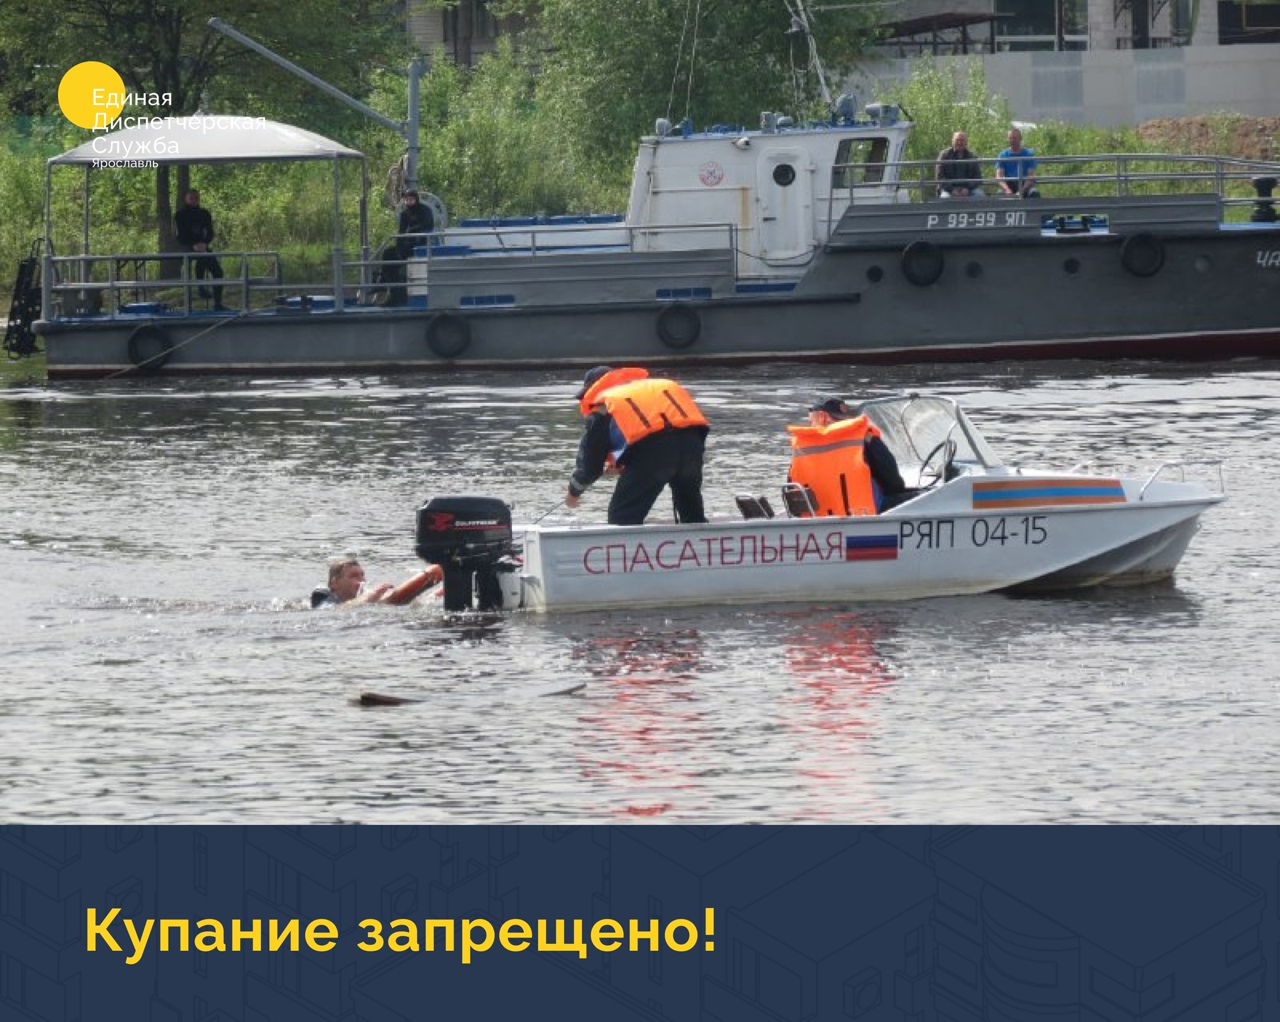 Постановлением мэрии города Ярославля утвержден перечень потенциально опасных мест, запрещенных для купания